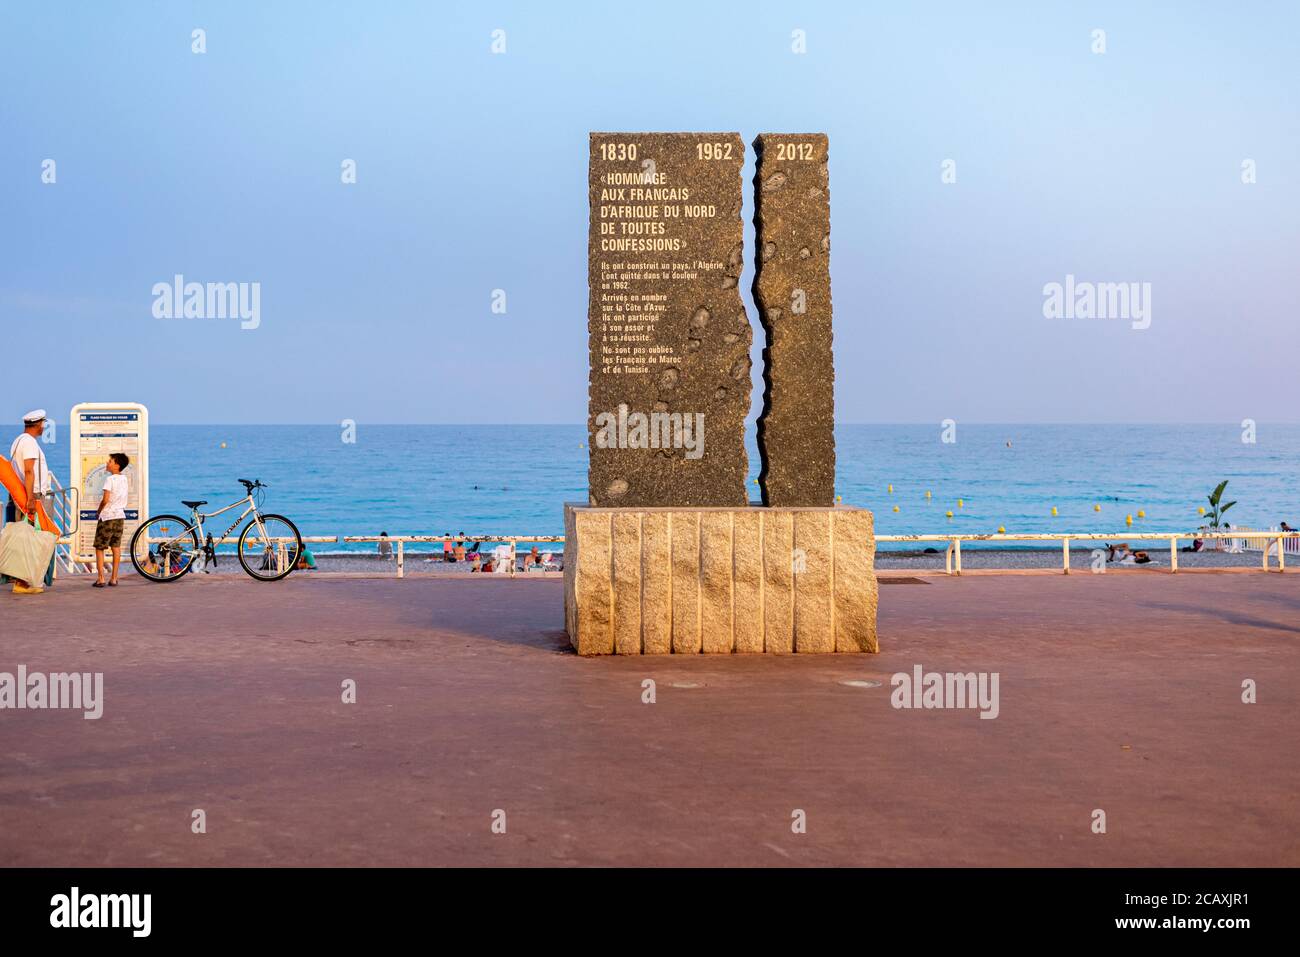 50 anni dopo la fine della guerra algerina, la città di Nizza ha inaugurato il 30 giugno 2012, un monumento dedicato ai francesi del Nord Africa. Foto Stock